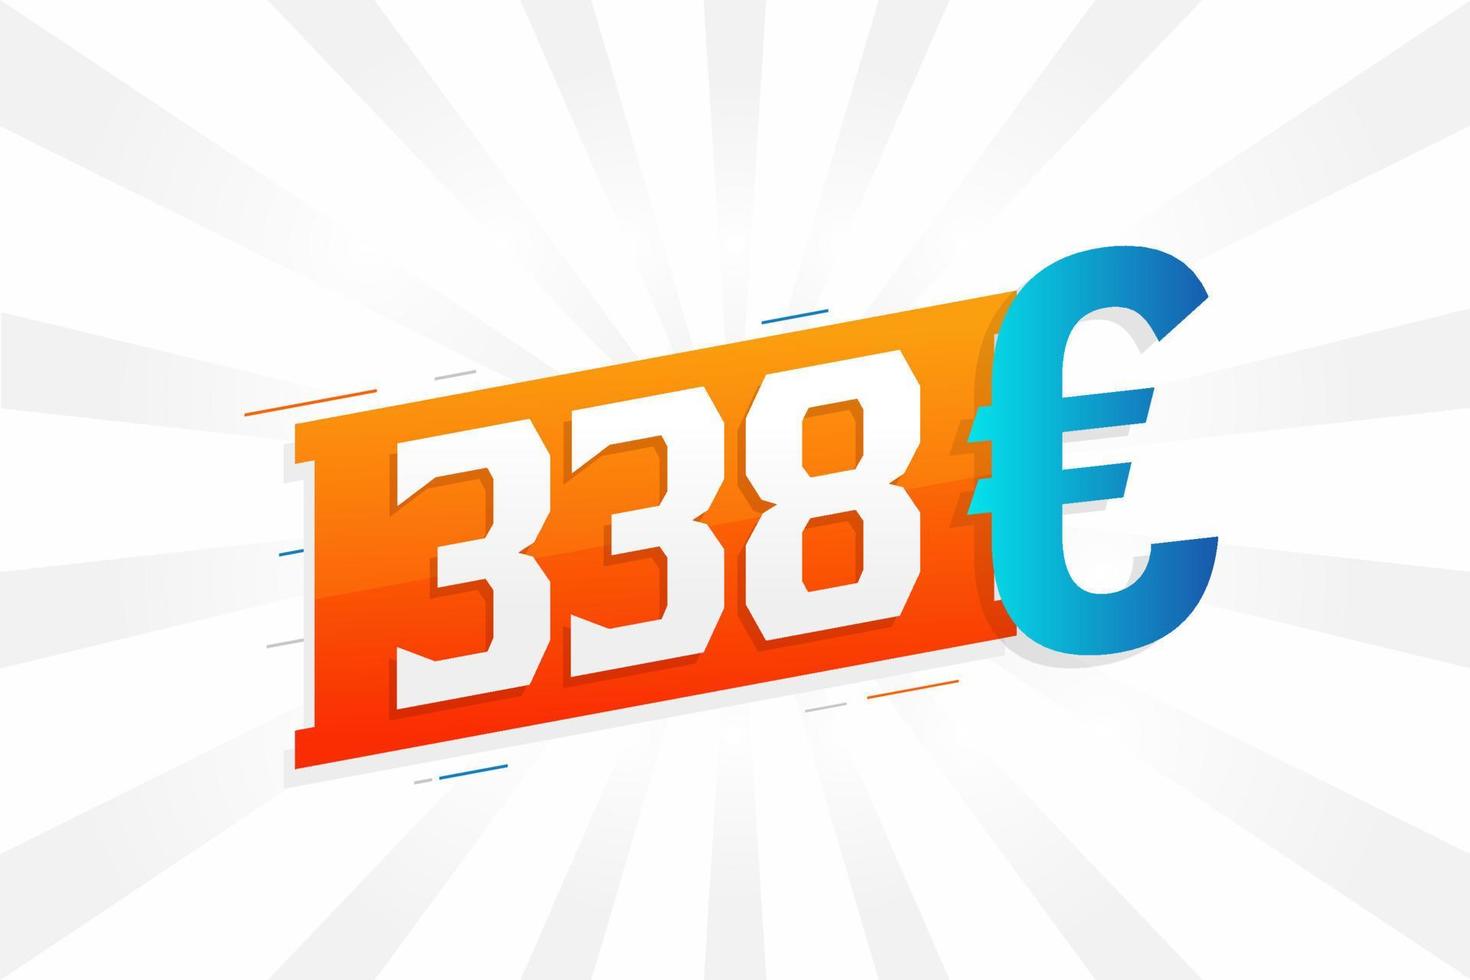 338 euro valuta vector tekst symbool. 338 euro Europese unie geld voorraad vector